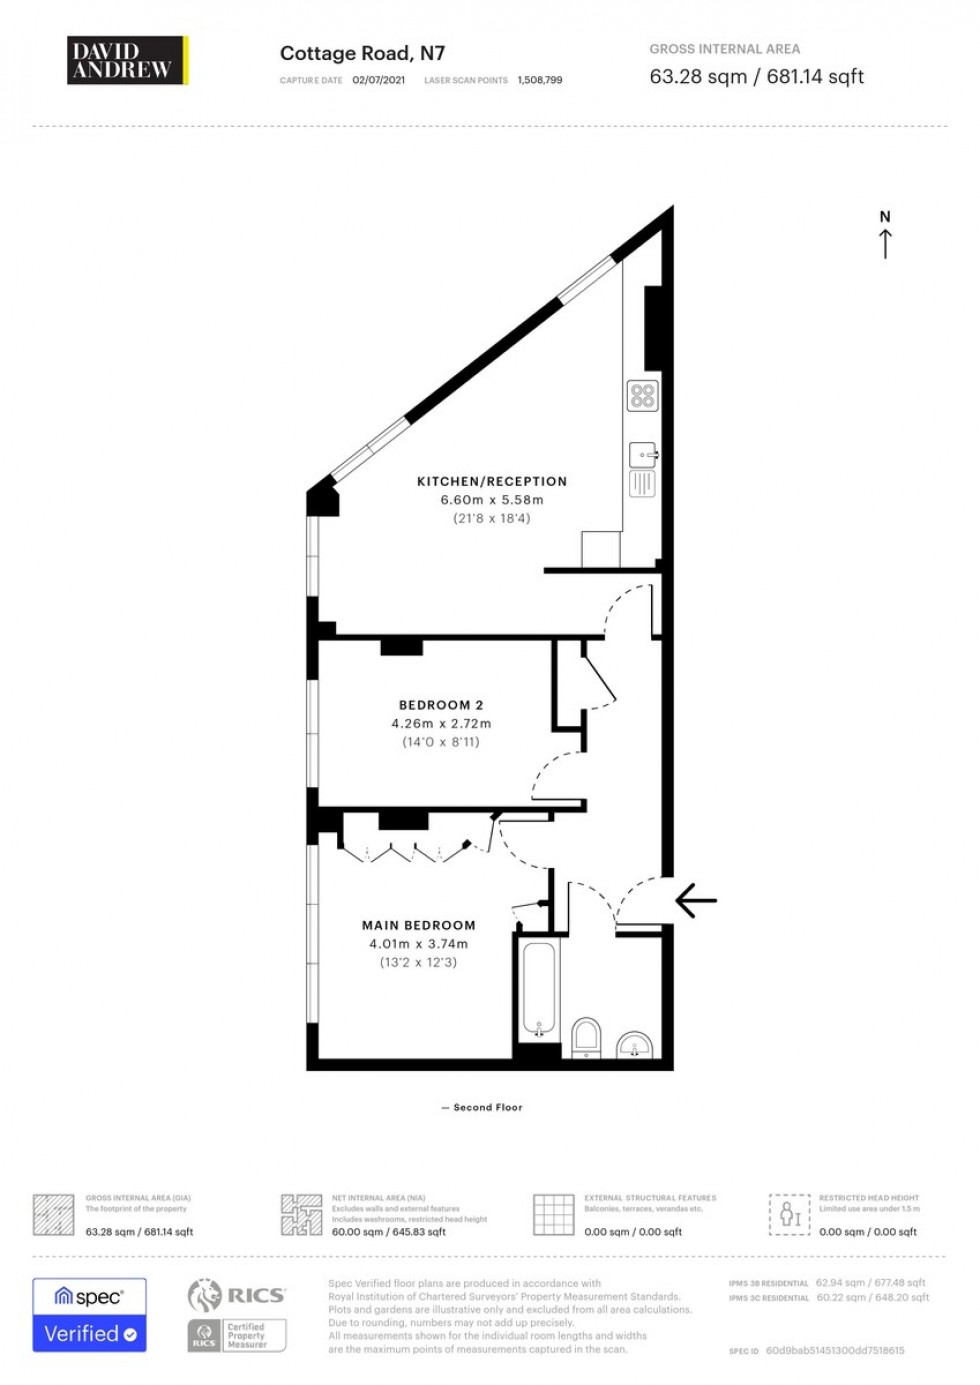 Floorplan for Cottage Road, N7 8TP